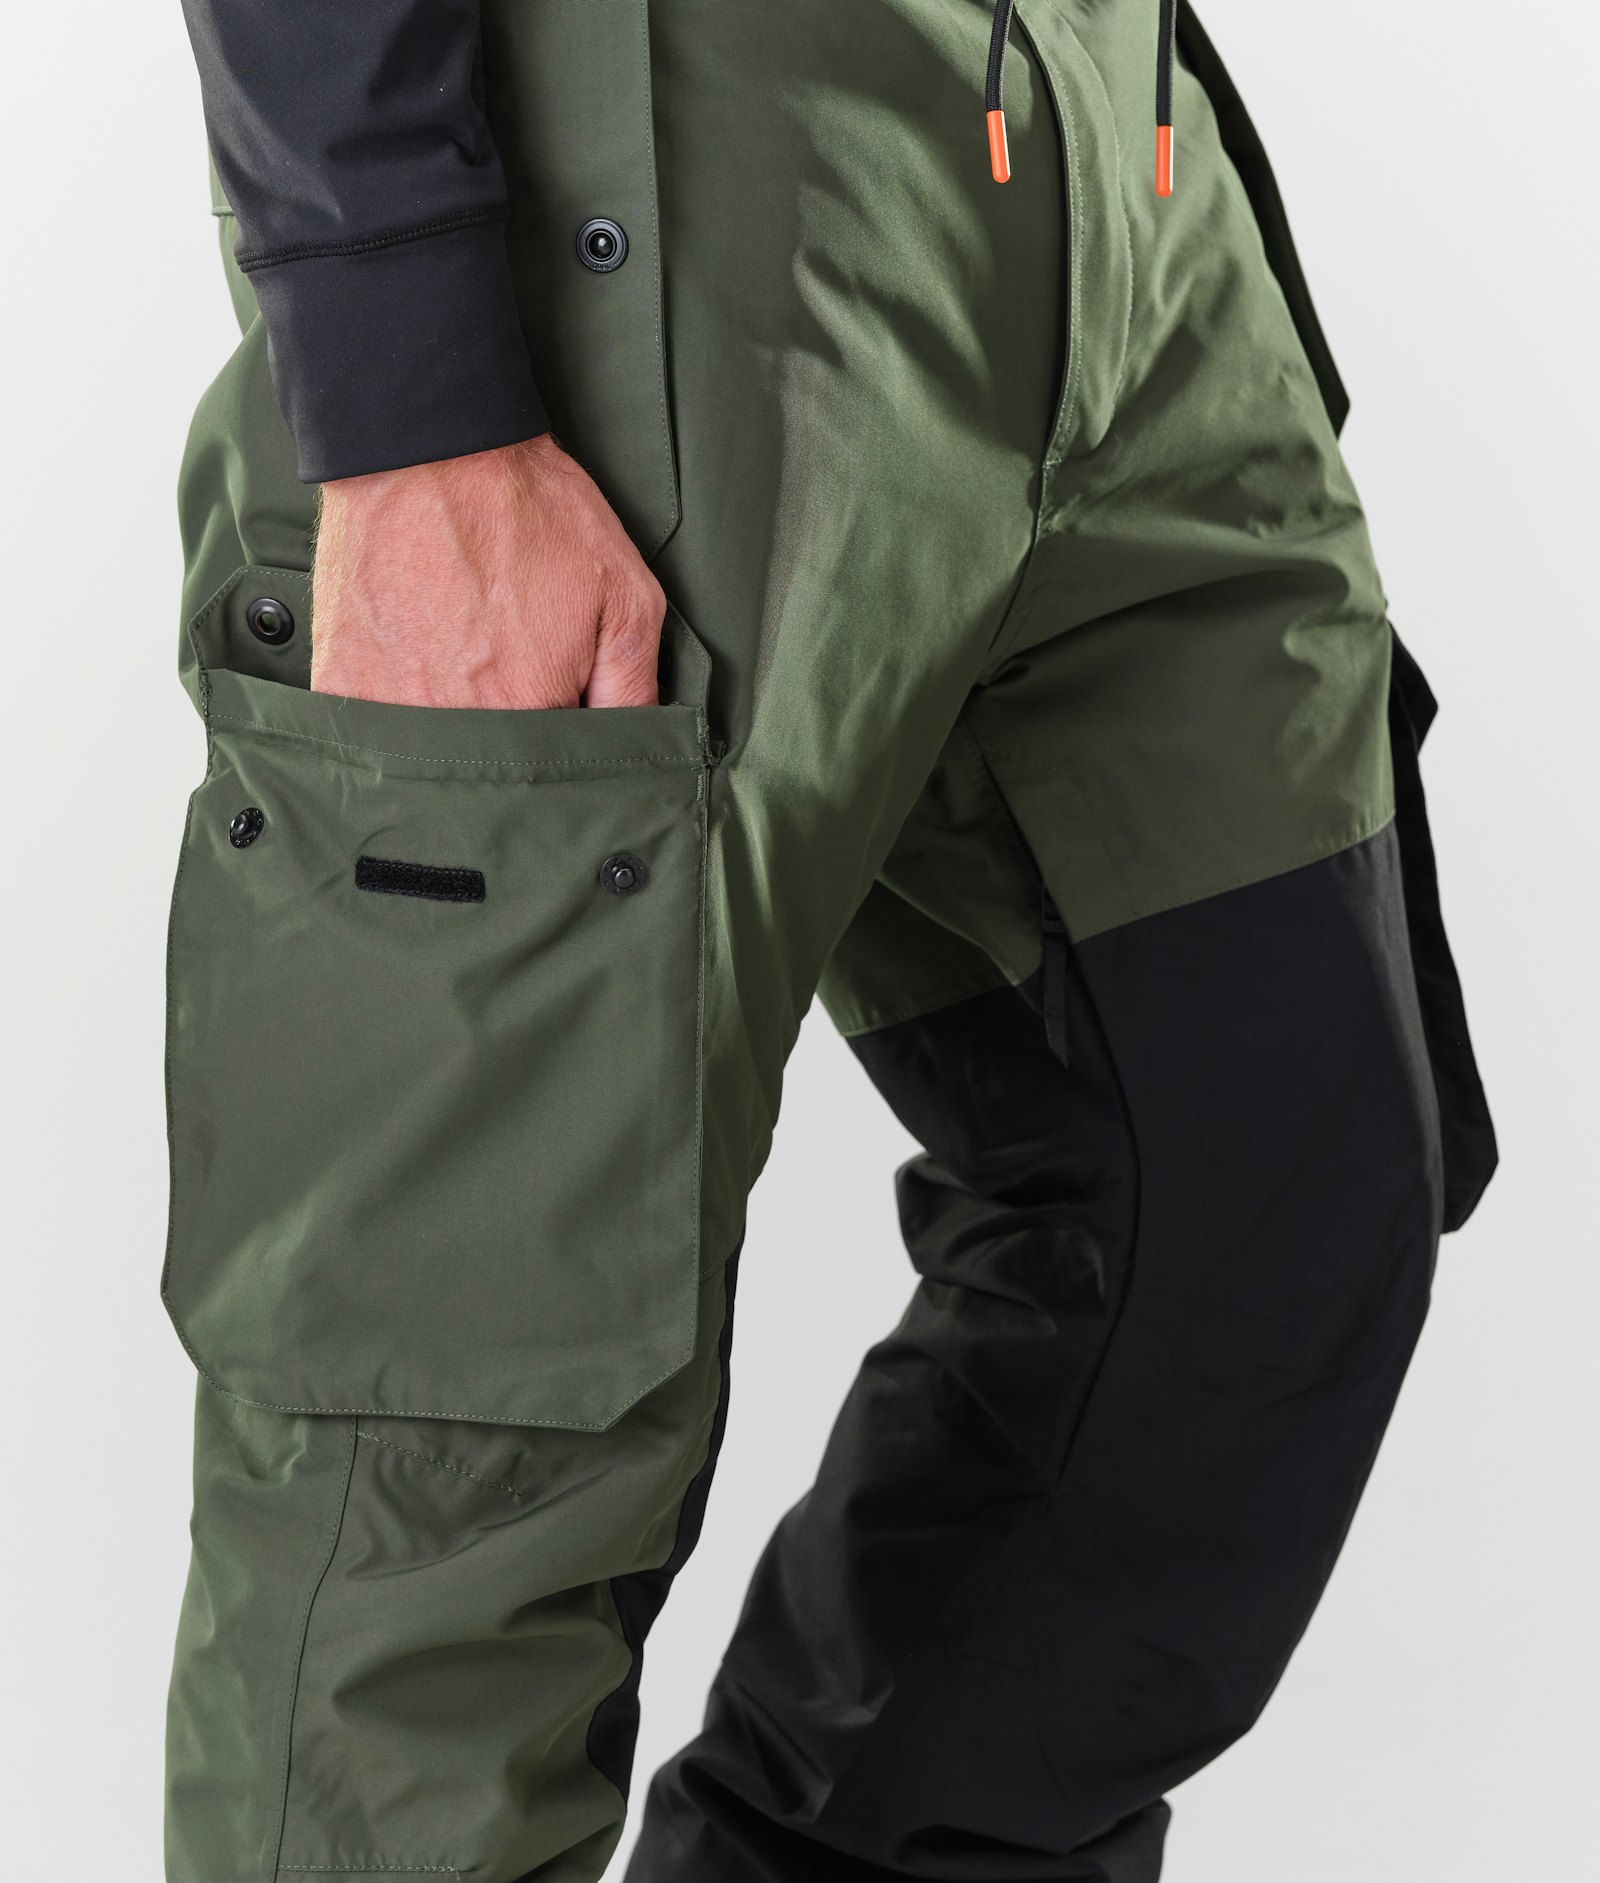 Dope Adept 2020 Spodnie Snowboardowe Mężczyźni Olive Green/Black